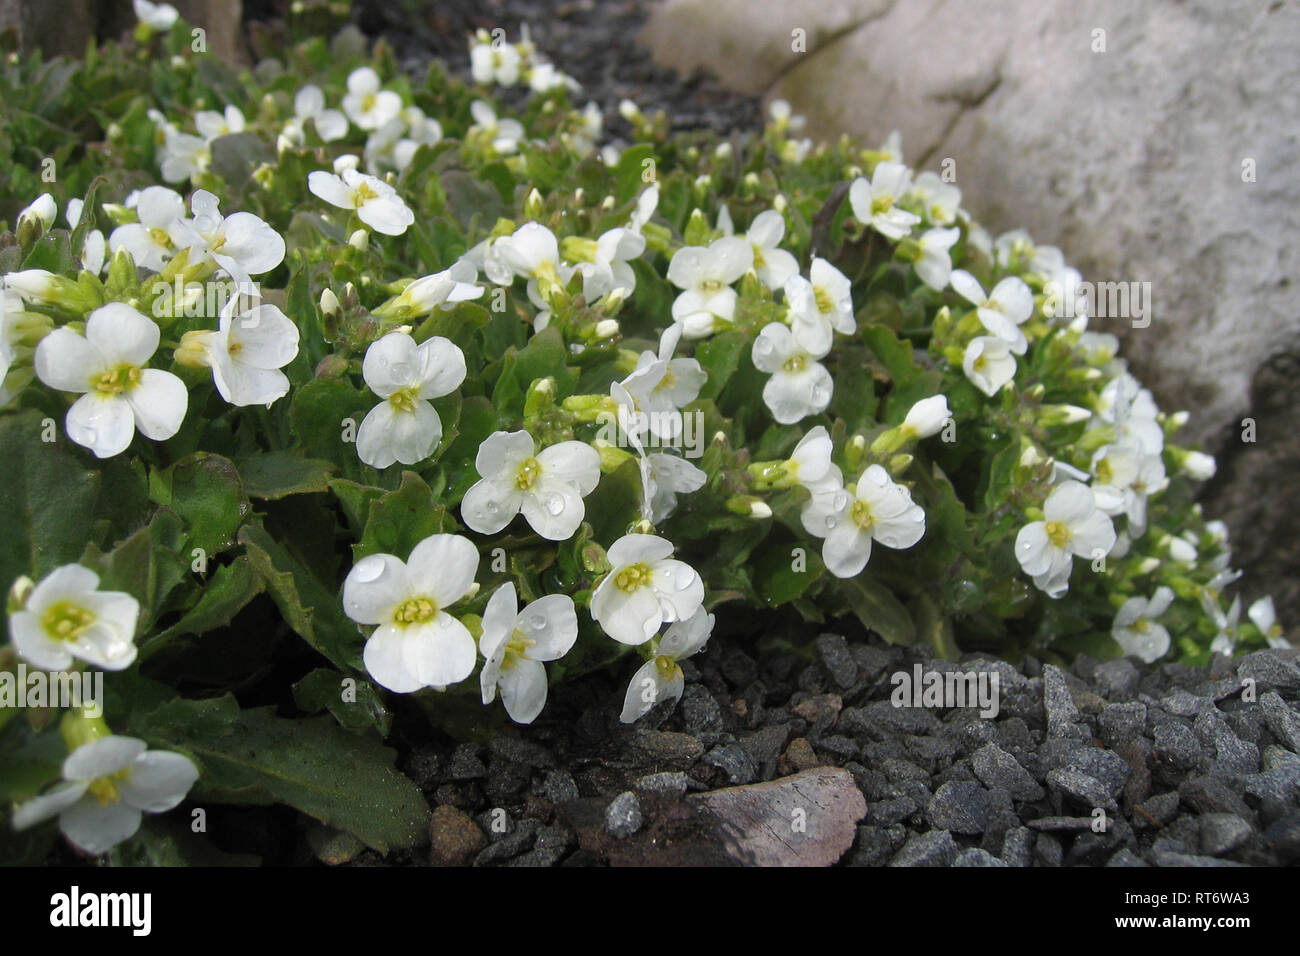 Arabis alpina ssp. caucasia 'Schneehaube' Stock Photo